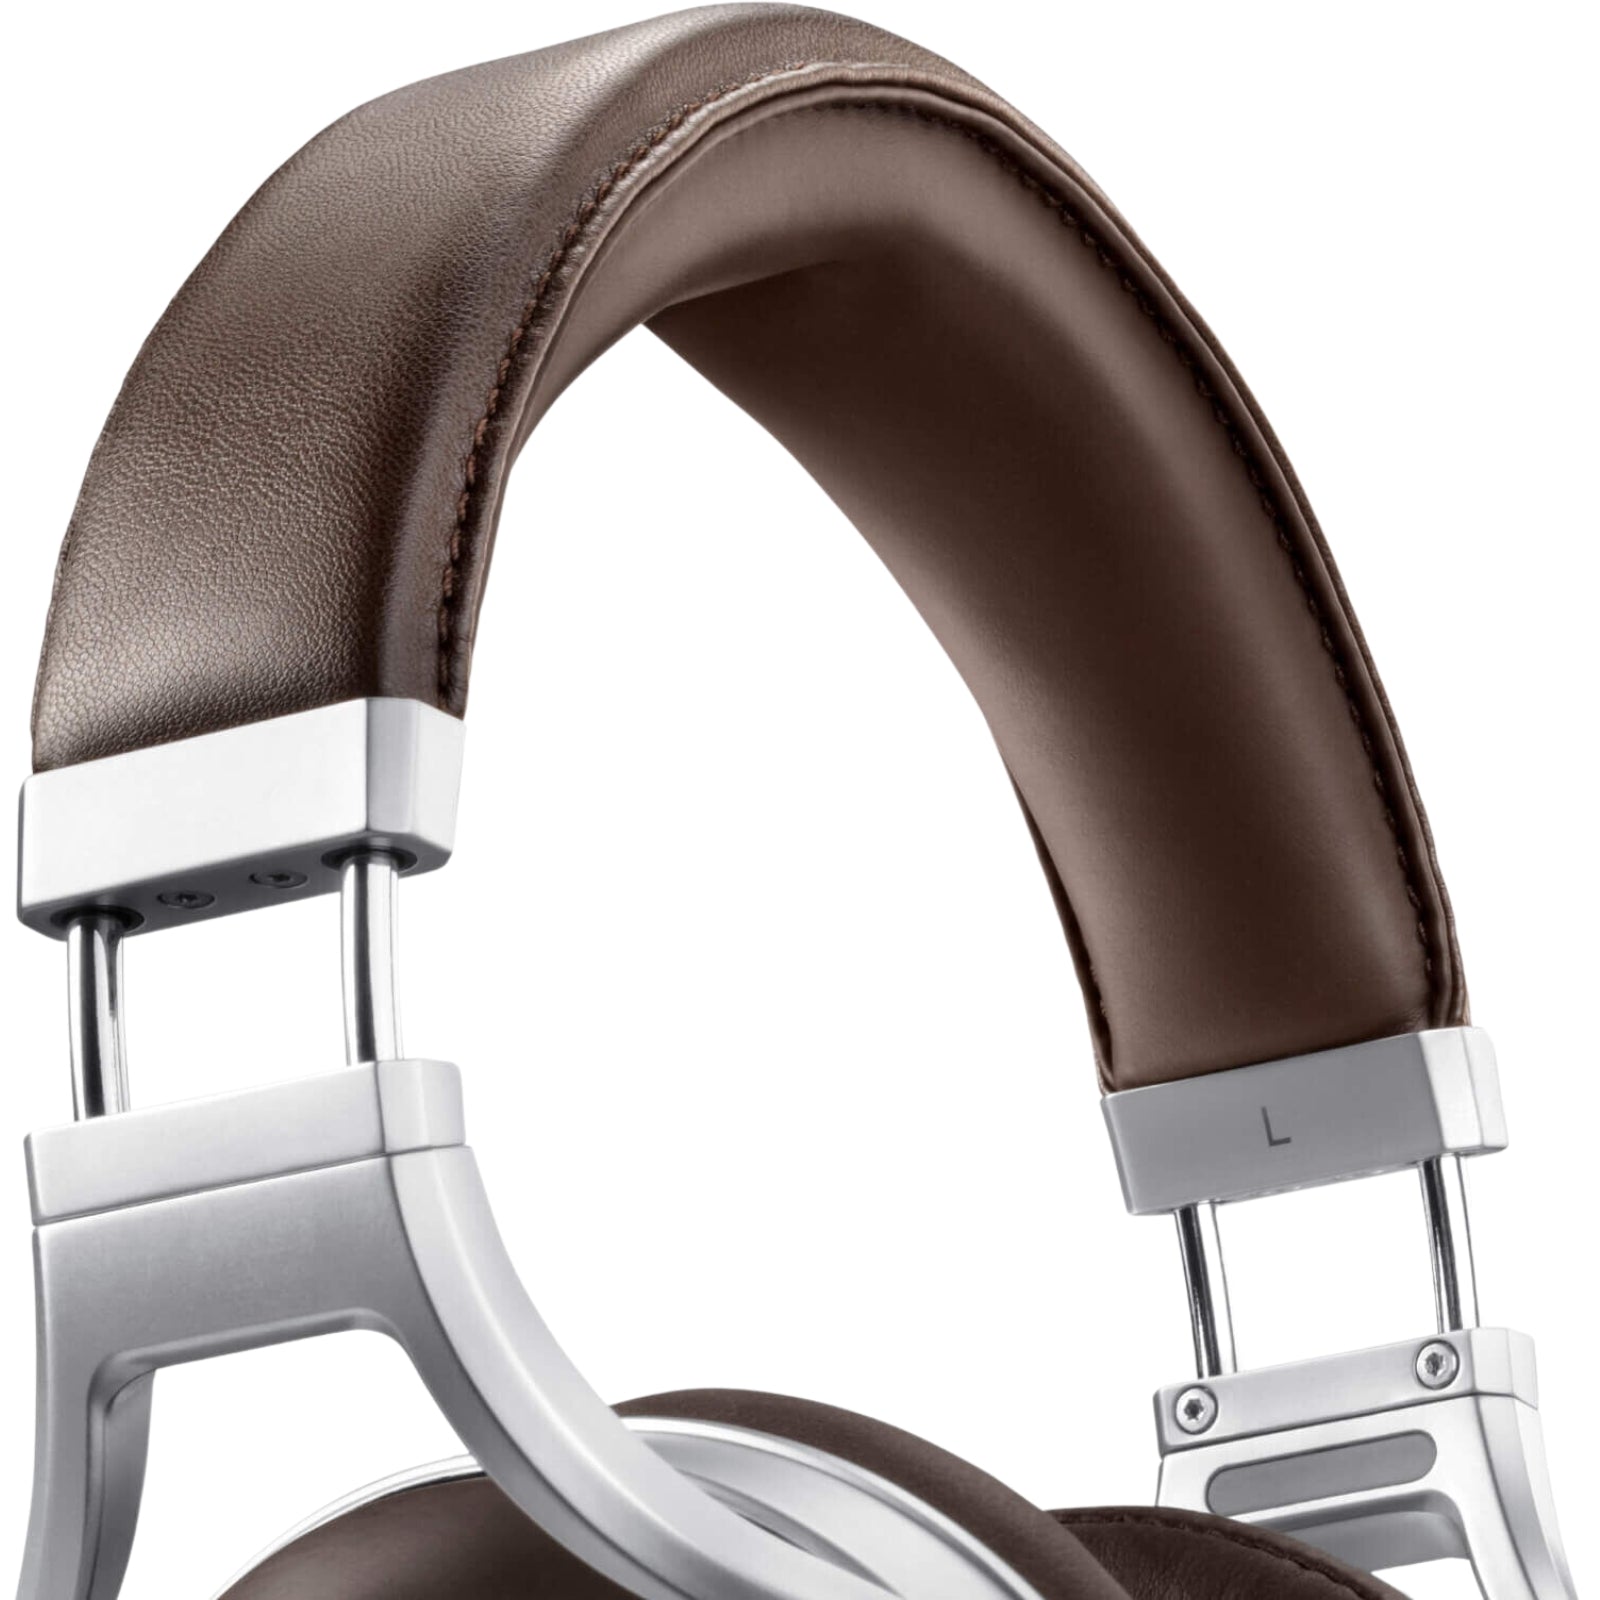 Denon AH-D5200 Over-Ear Headphones - MyMobile